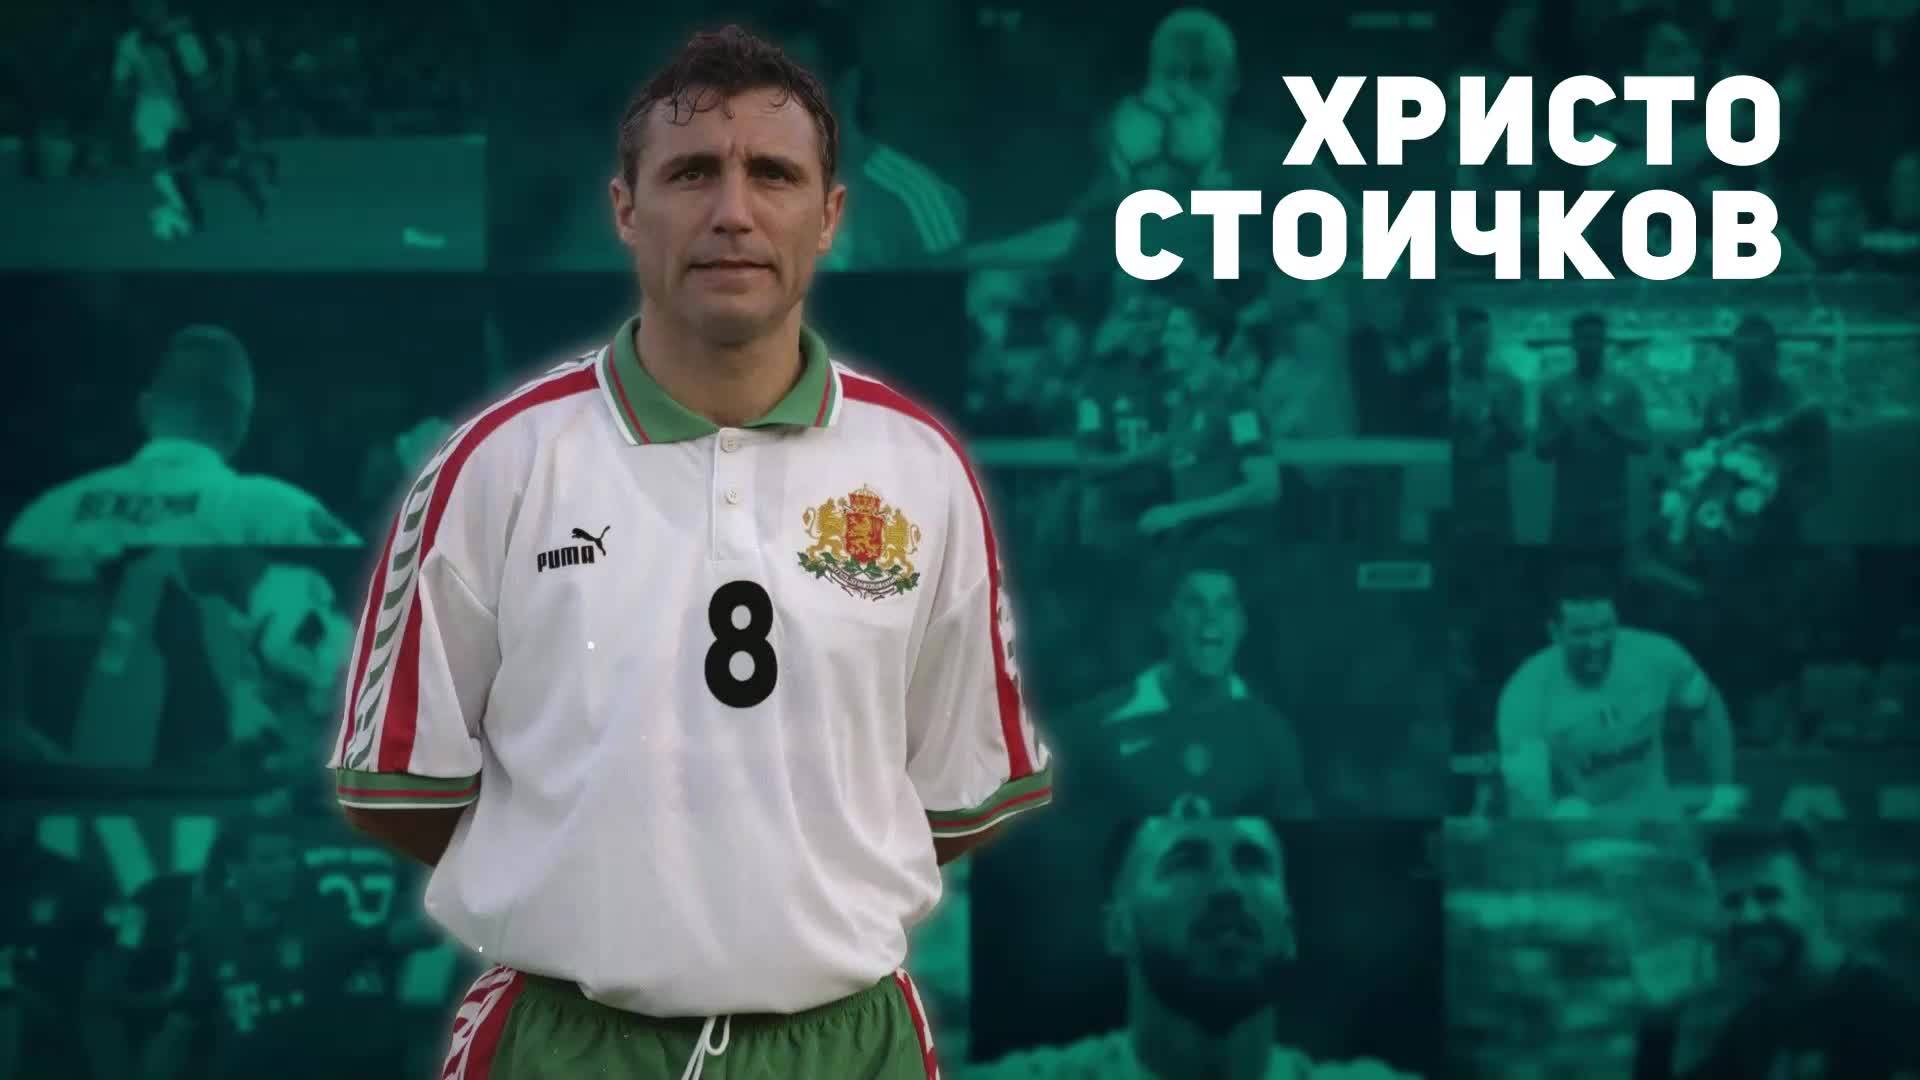 Христо Стоичков - българската гордост